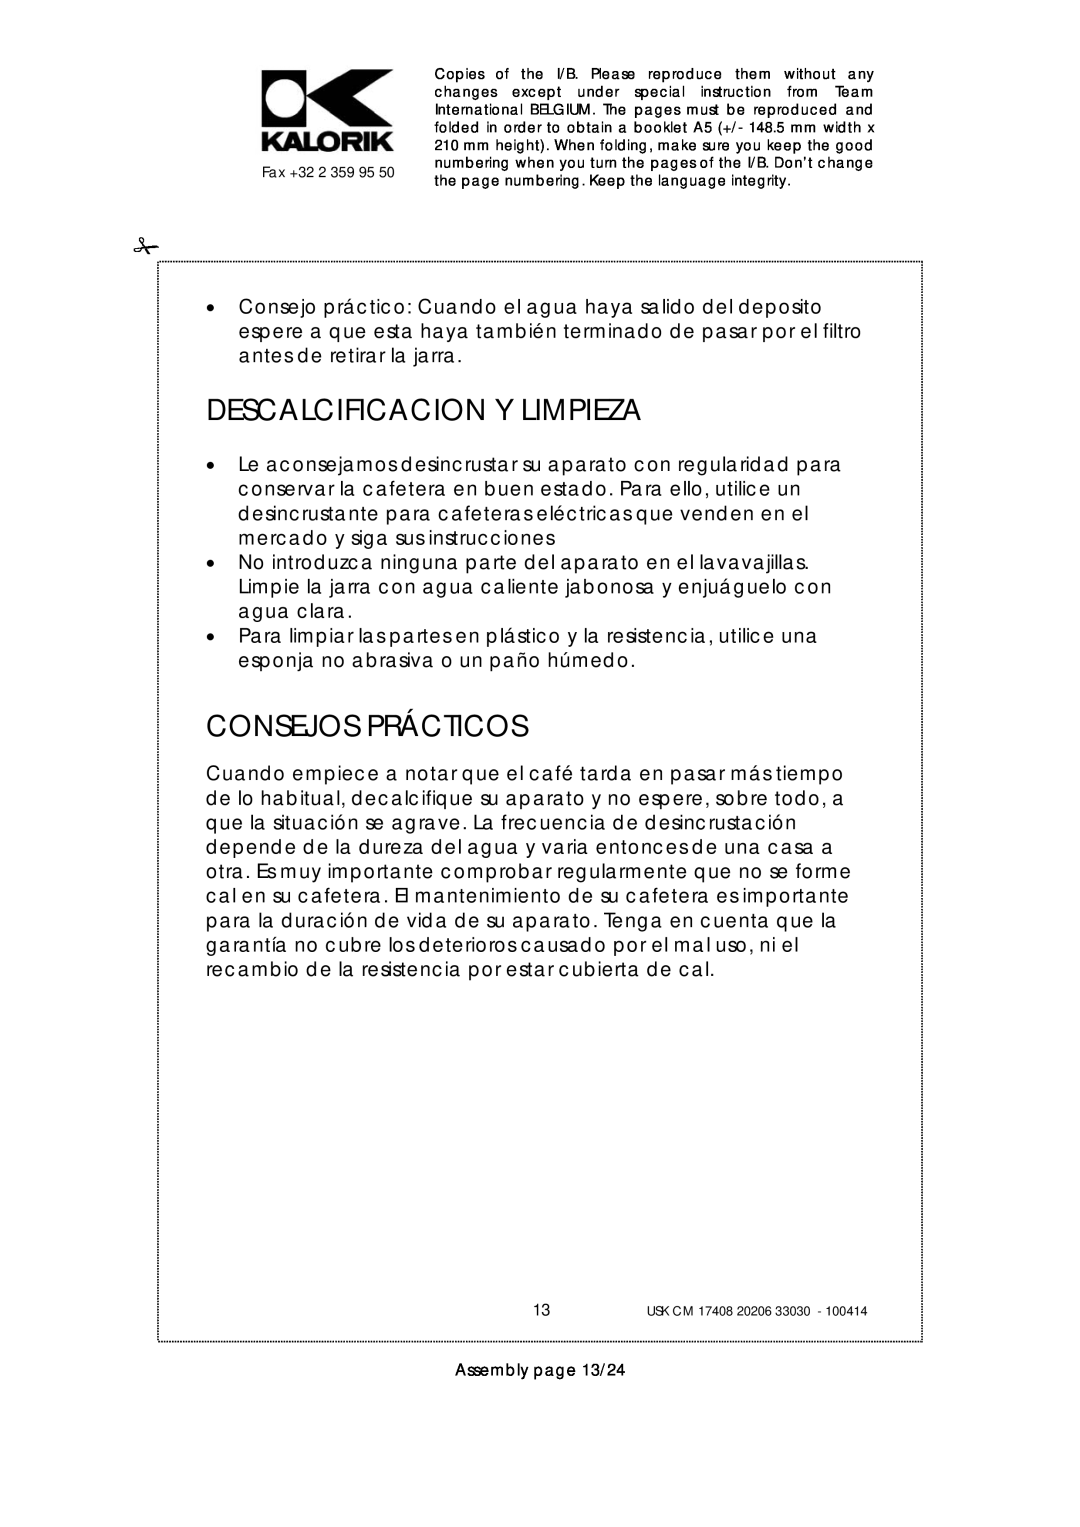 Kalorik USK CM 17408, USK CM 33030, USK CM 20206 manual Descalcificacion Y Limpieza, Consejos Prácticos, Assembly page 13/24 